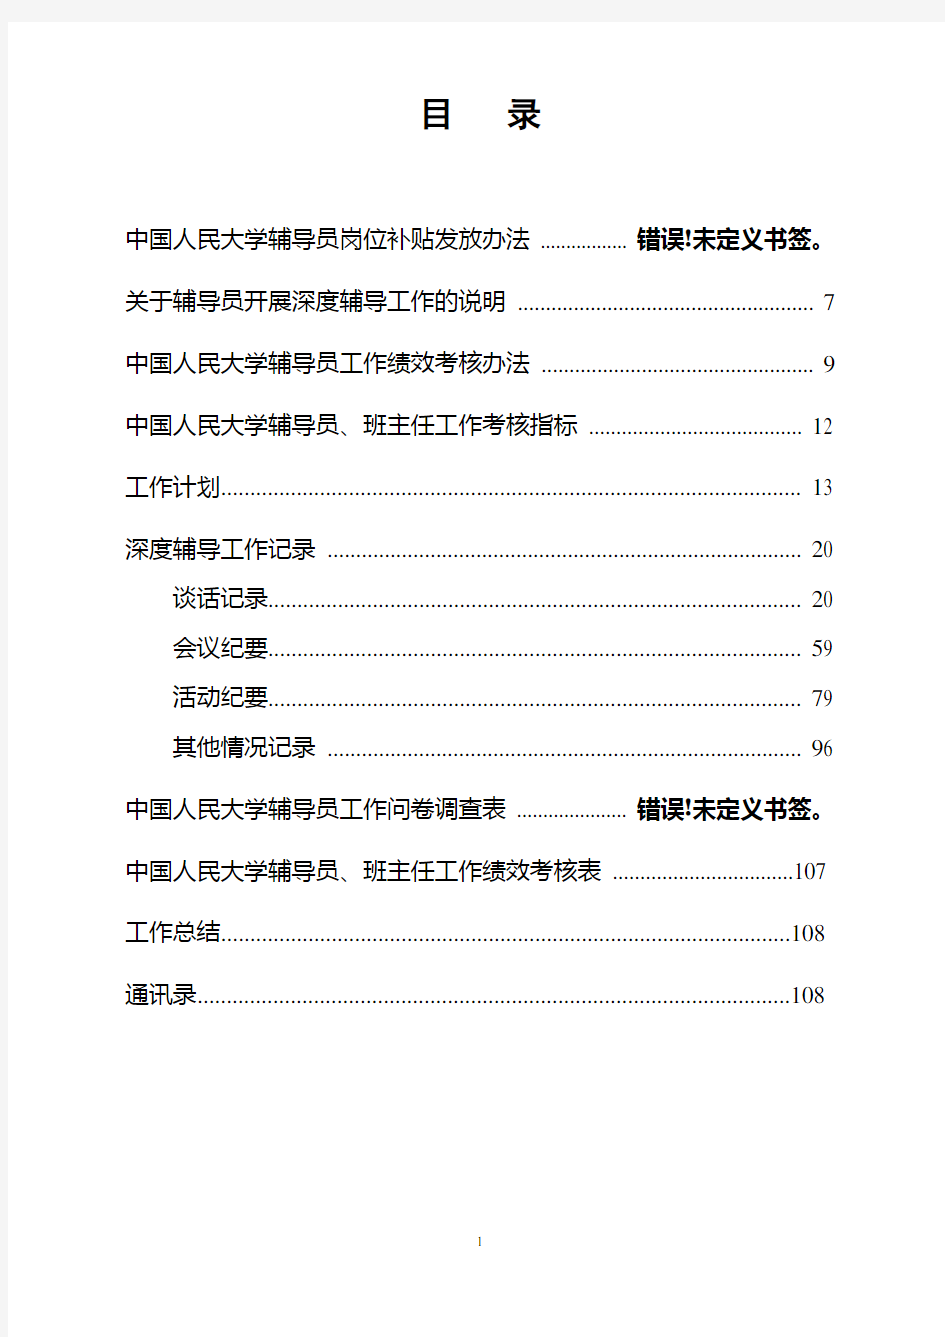 中国人民大学辅导员工作手册